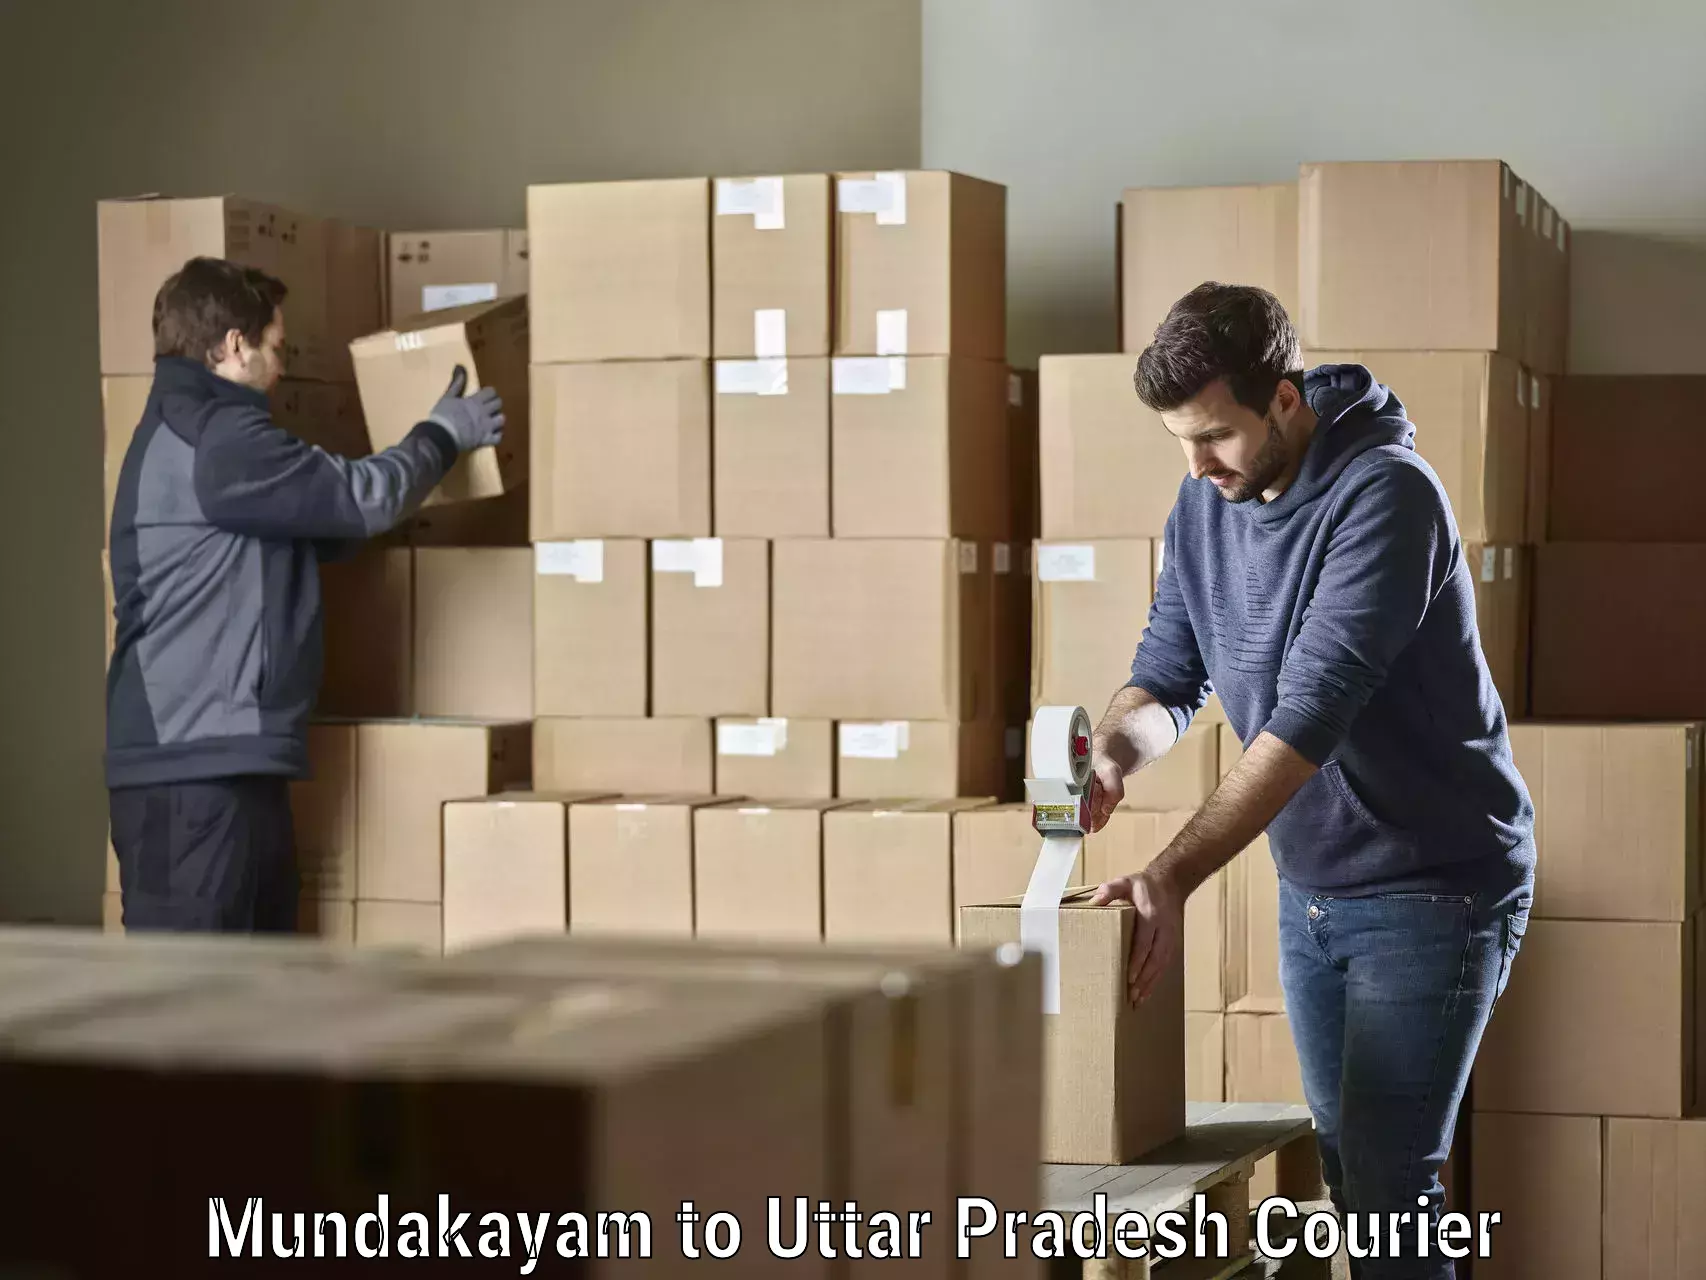 Express courier capabilities Mundakayam to Aligarh Muslim University